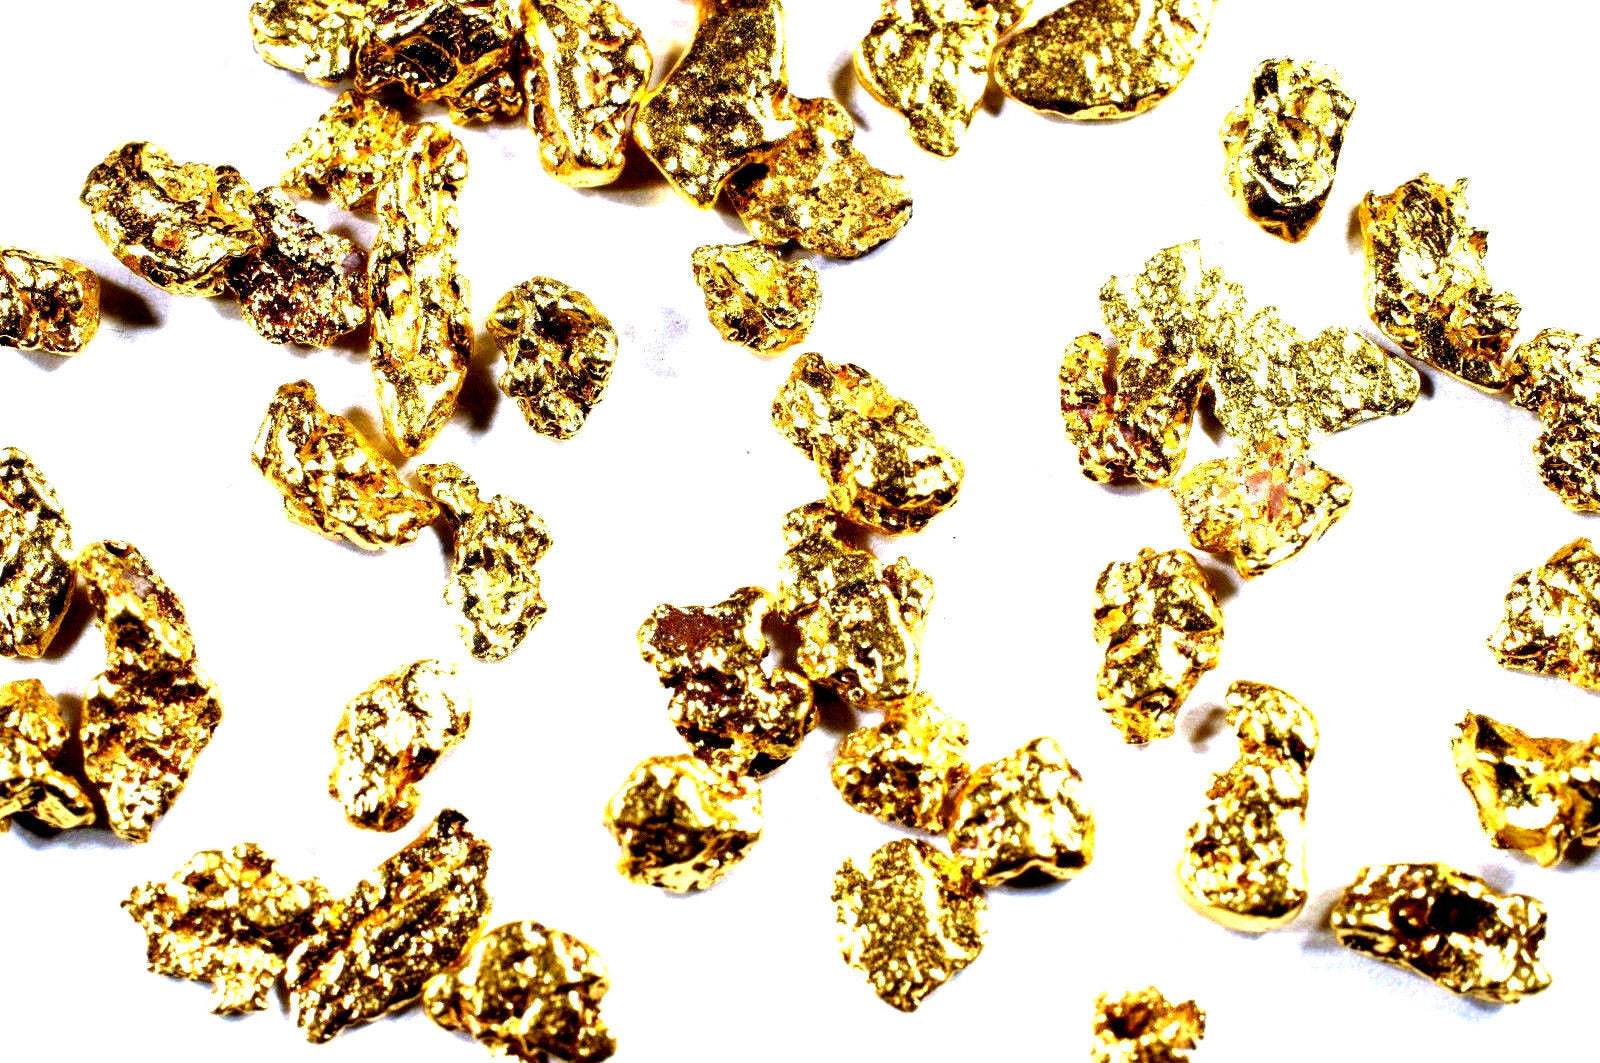 0.200+ GRAMS ALASKAN YUKON BC NATURAL PURE GOLD NUGGET HAND PICKED - Liquidbullion